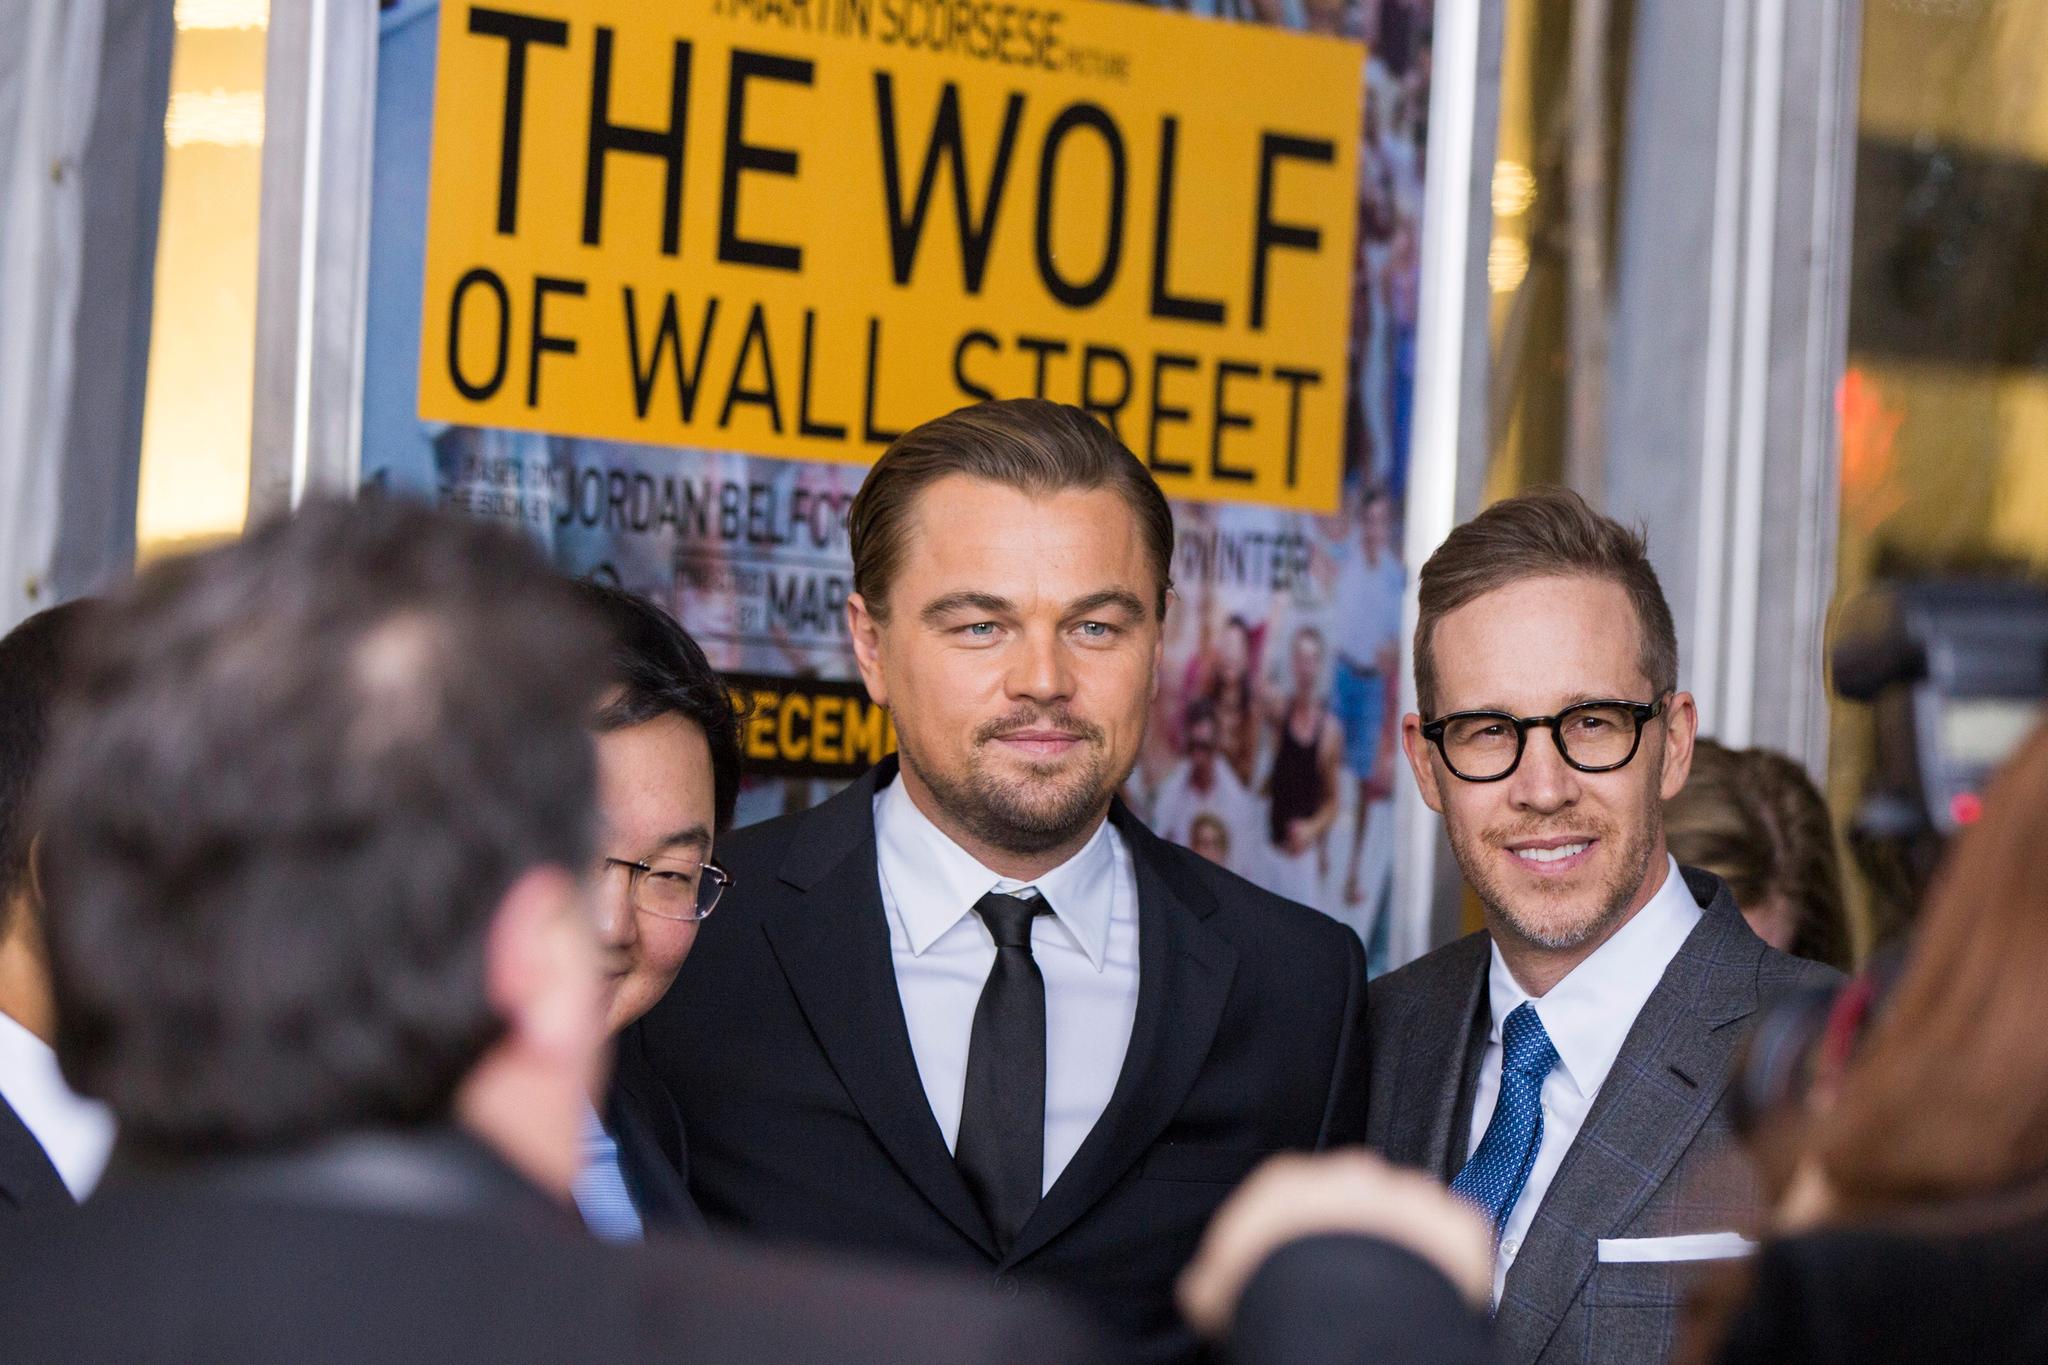 Filmen The Wolf of Wall Street, med Leonardo DiCaprio i hovedrollen, ble blant annet finansiert med penger fra det omstridte utviklingsfondet 1MDB.